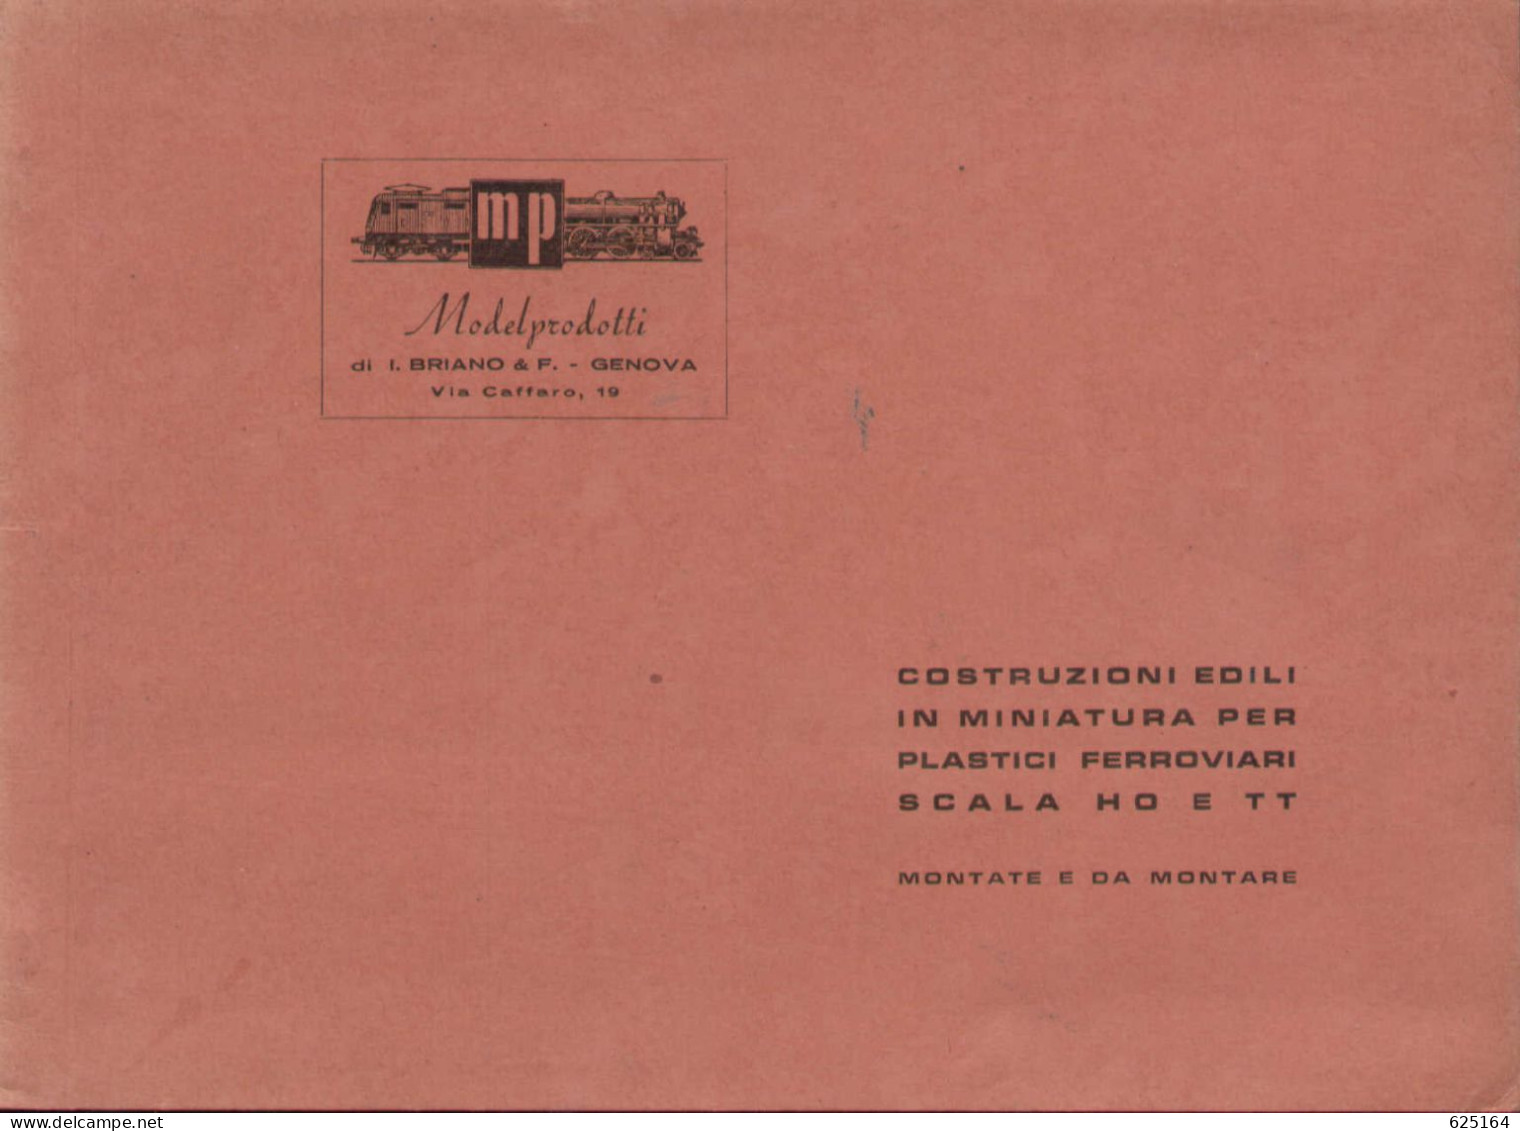 Catalogue MP ModelProdotti 1955? Ed. Italo Briano Genova Accessori HO  - En Italien - Non Classificati